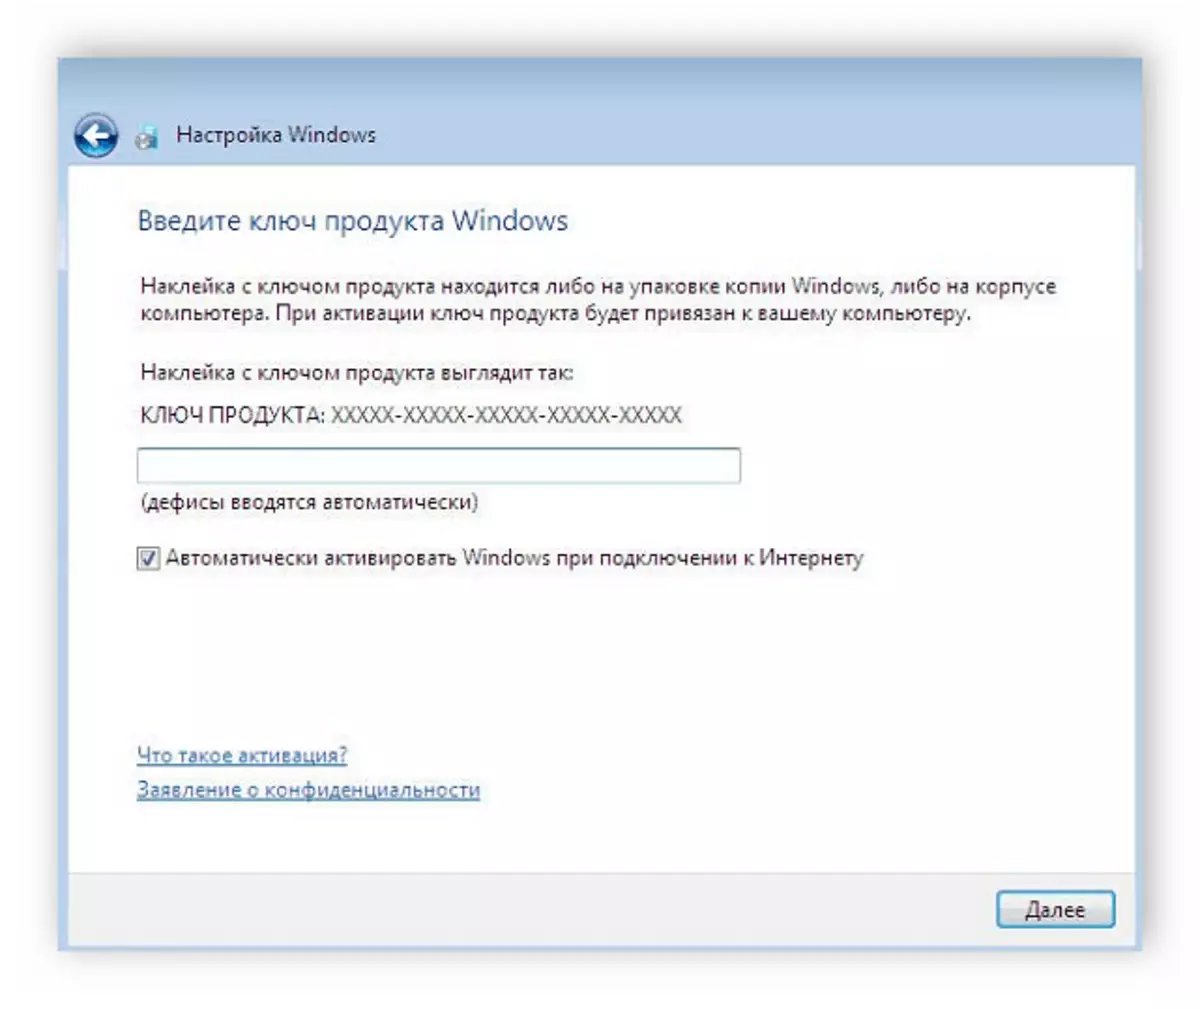 Windows 7を有効にするにはキーを入力してください